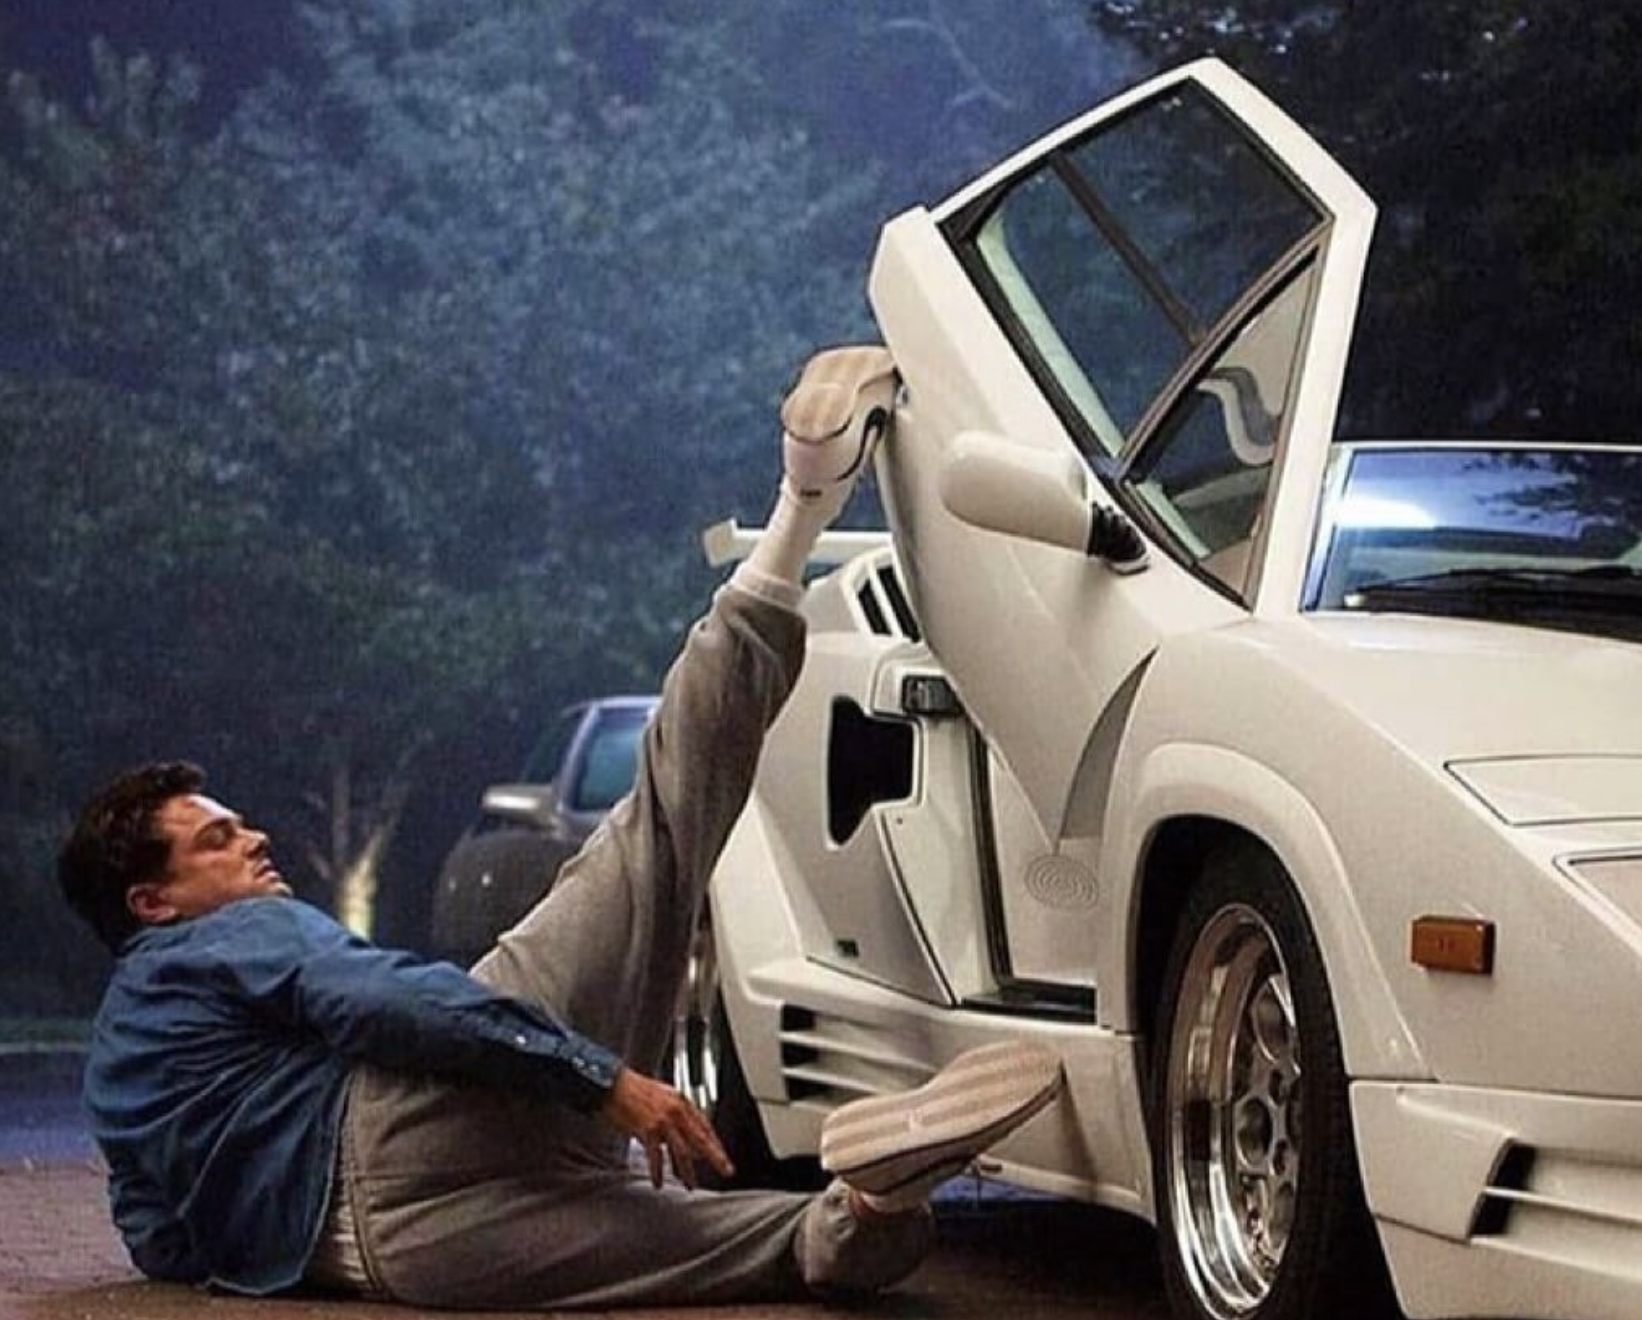 電影《華爾街之狼》損壞版林寶堅尼跑車將進行拍賣，預計成交價 150-200萬美金